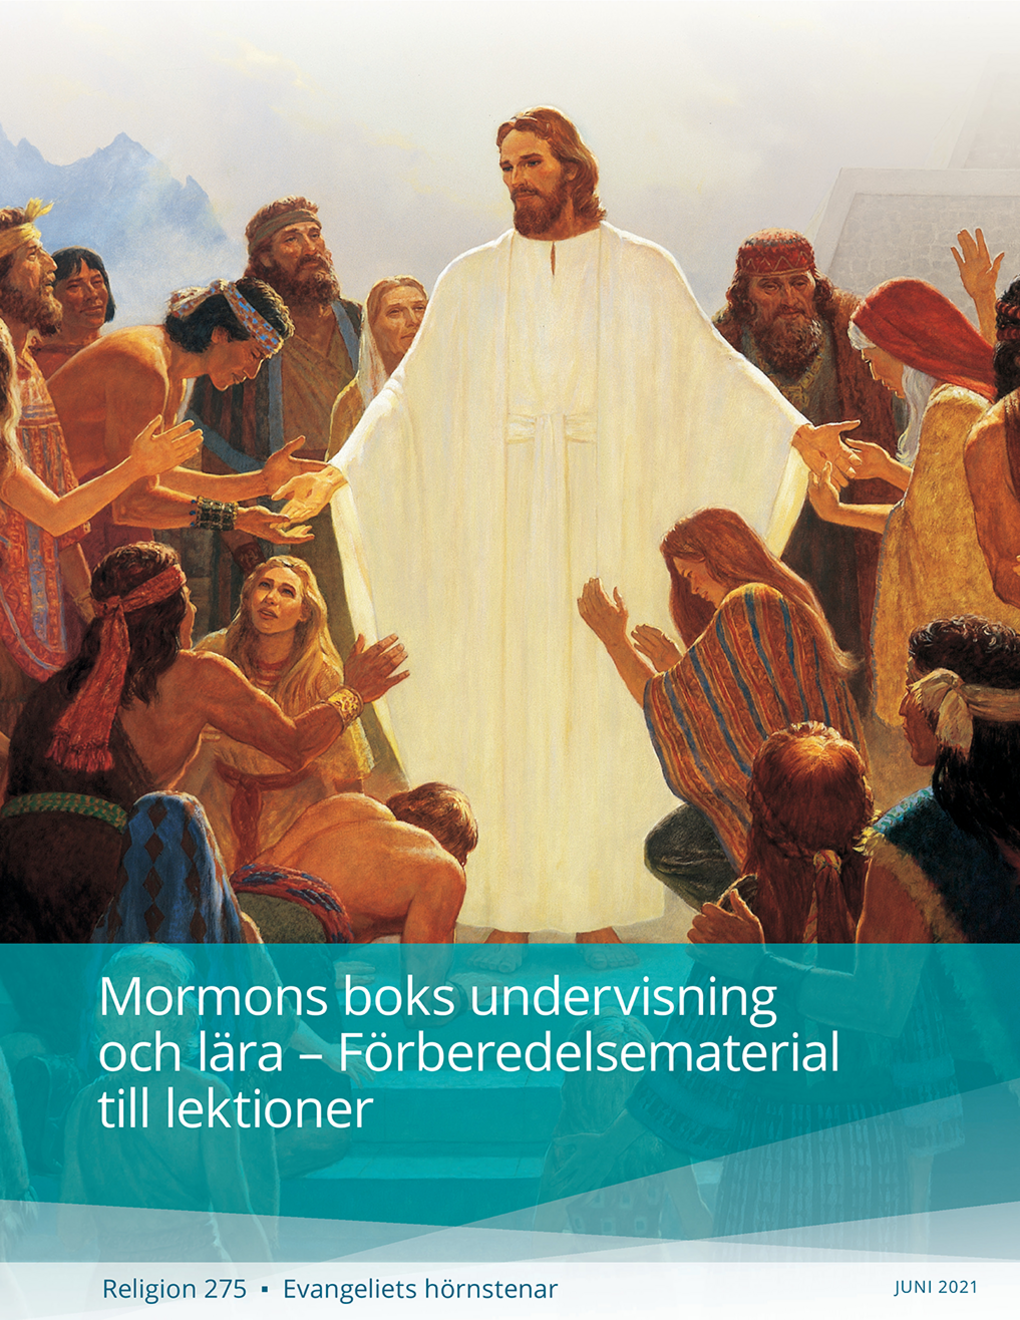 Mormons boks undervisning och lära – Förberedelsematerial till lektioner